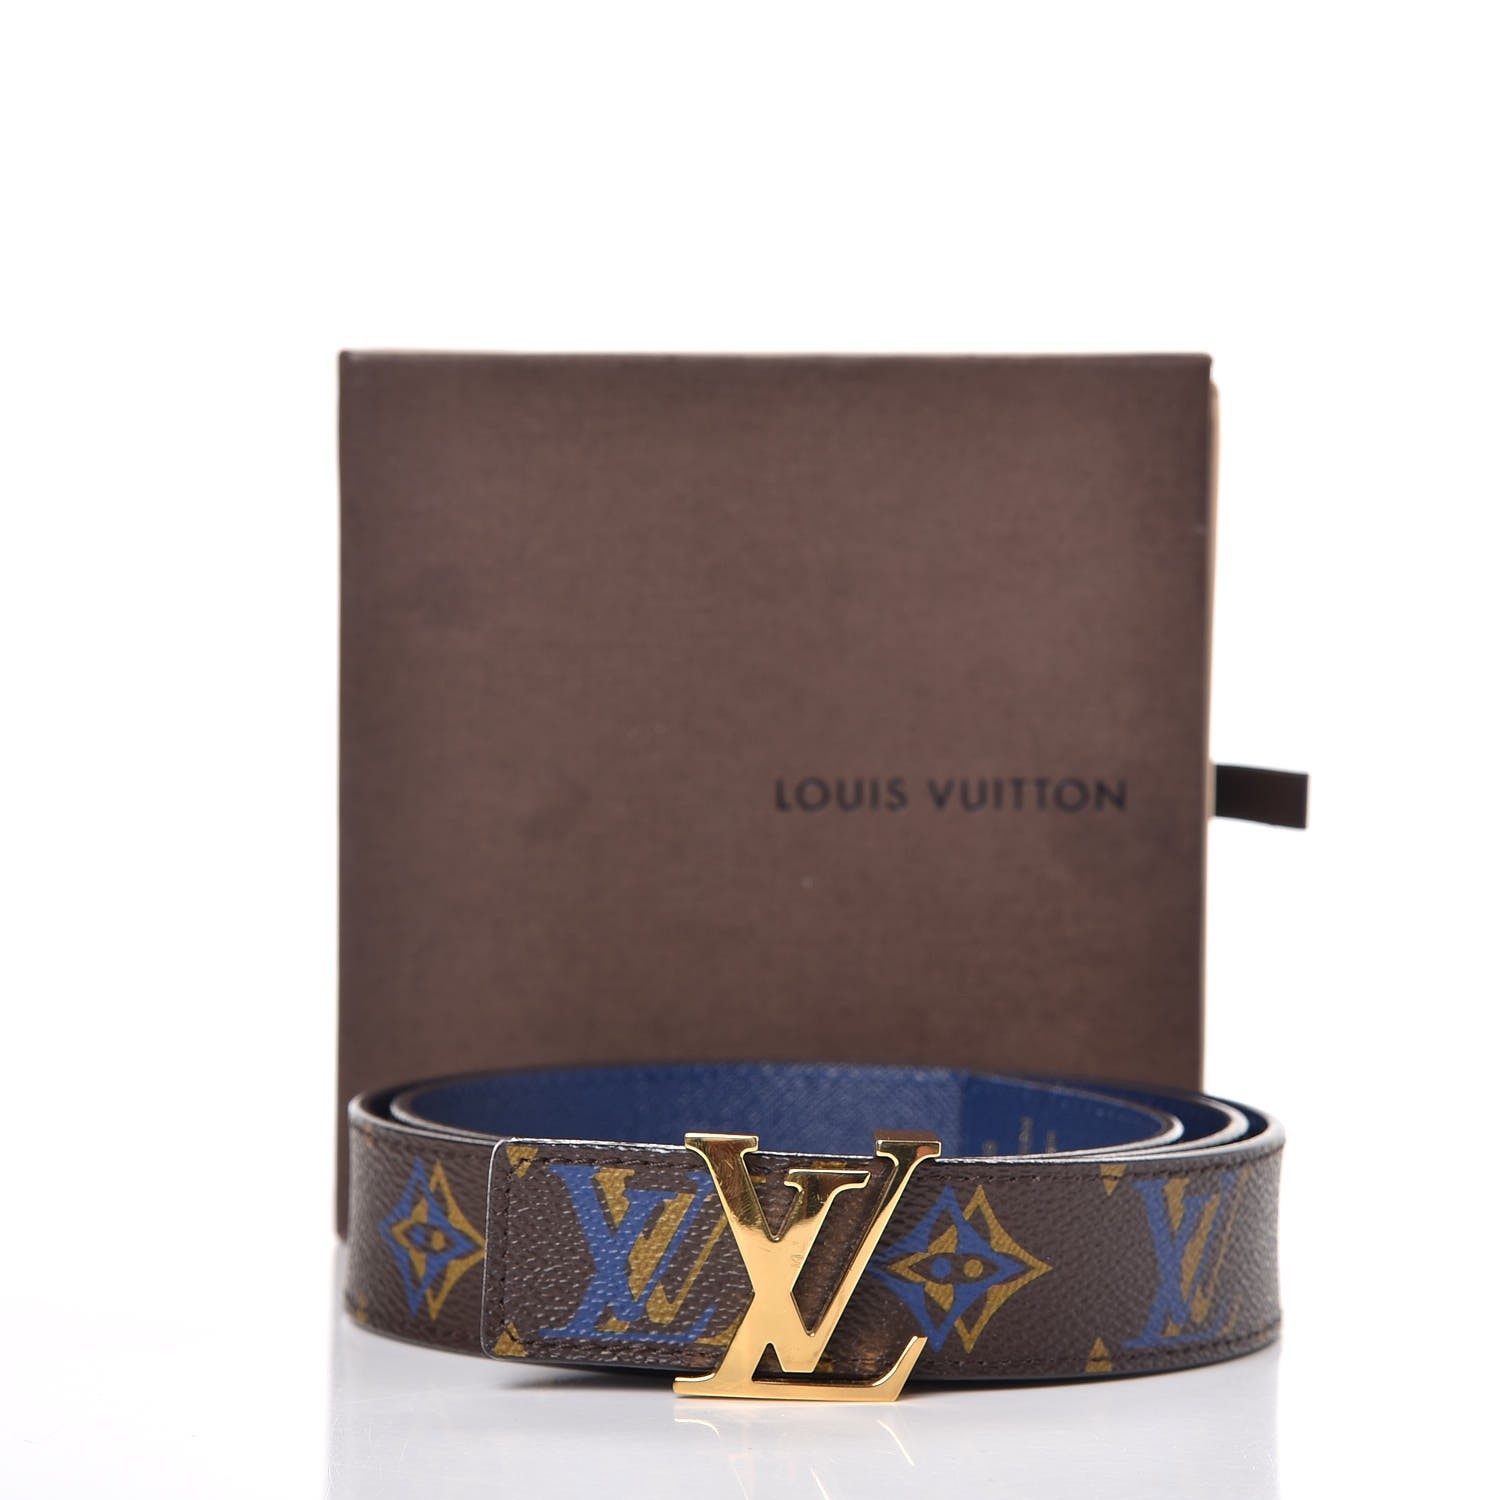 Louis Vuitton Lv Belt Size 32 Men Unisex for Sale in Las Vegas, NV